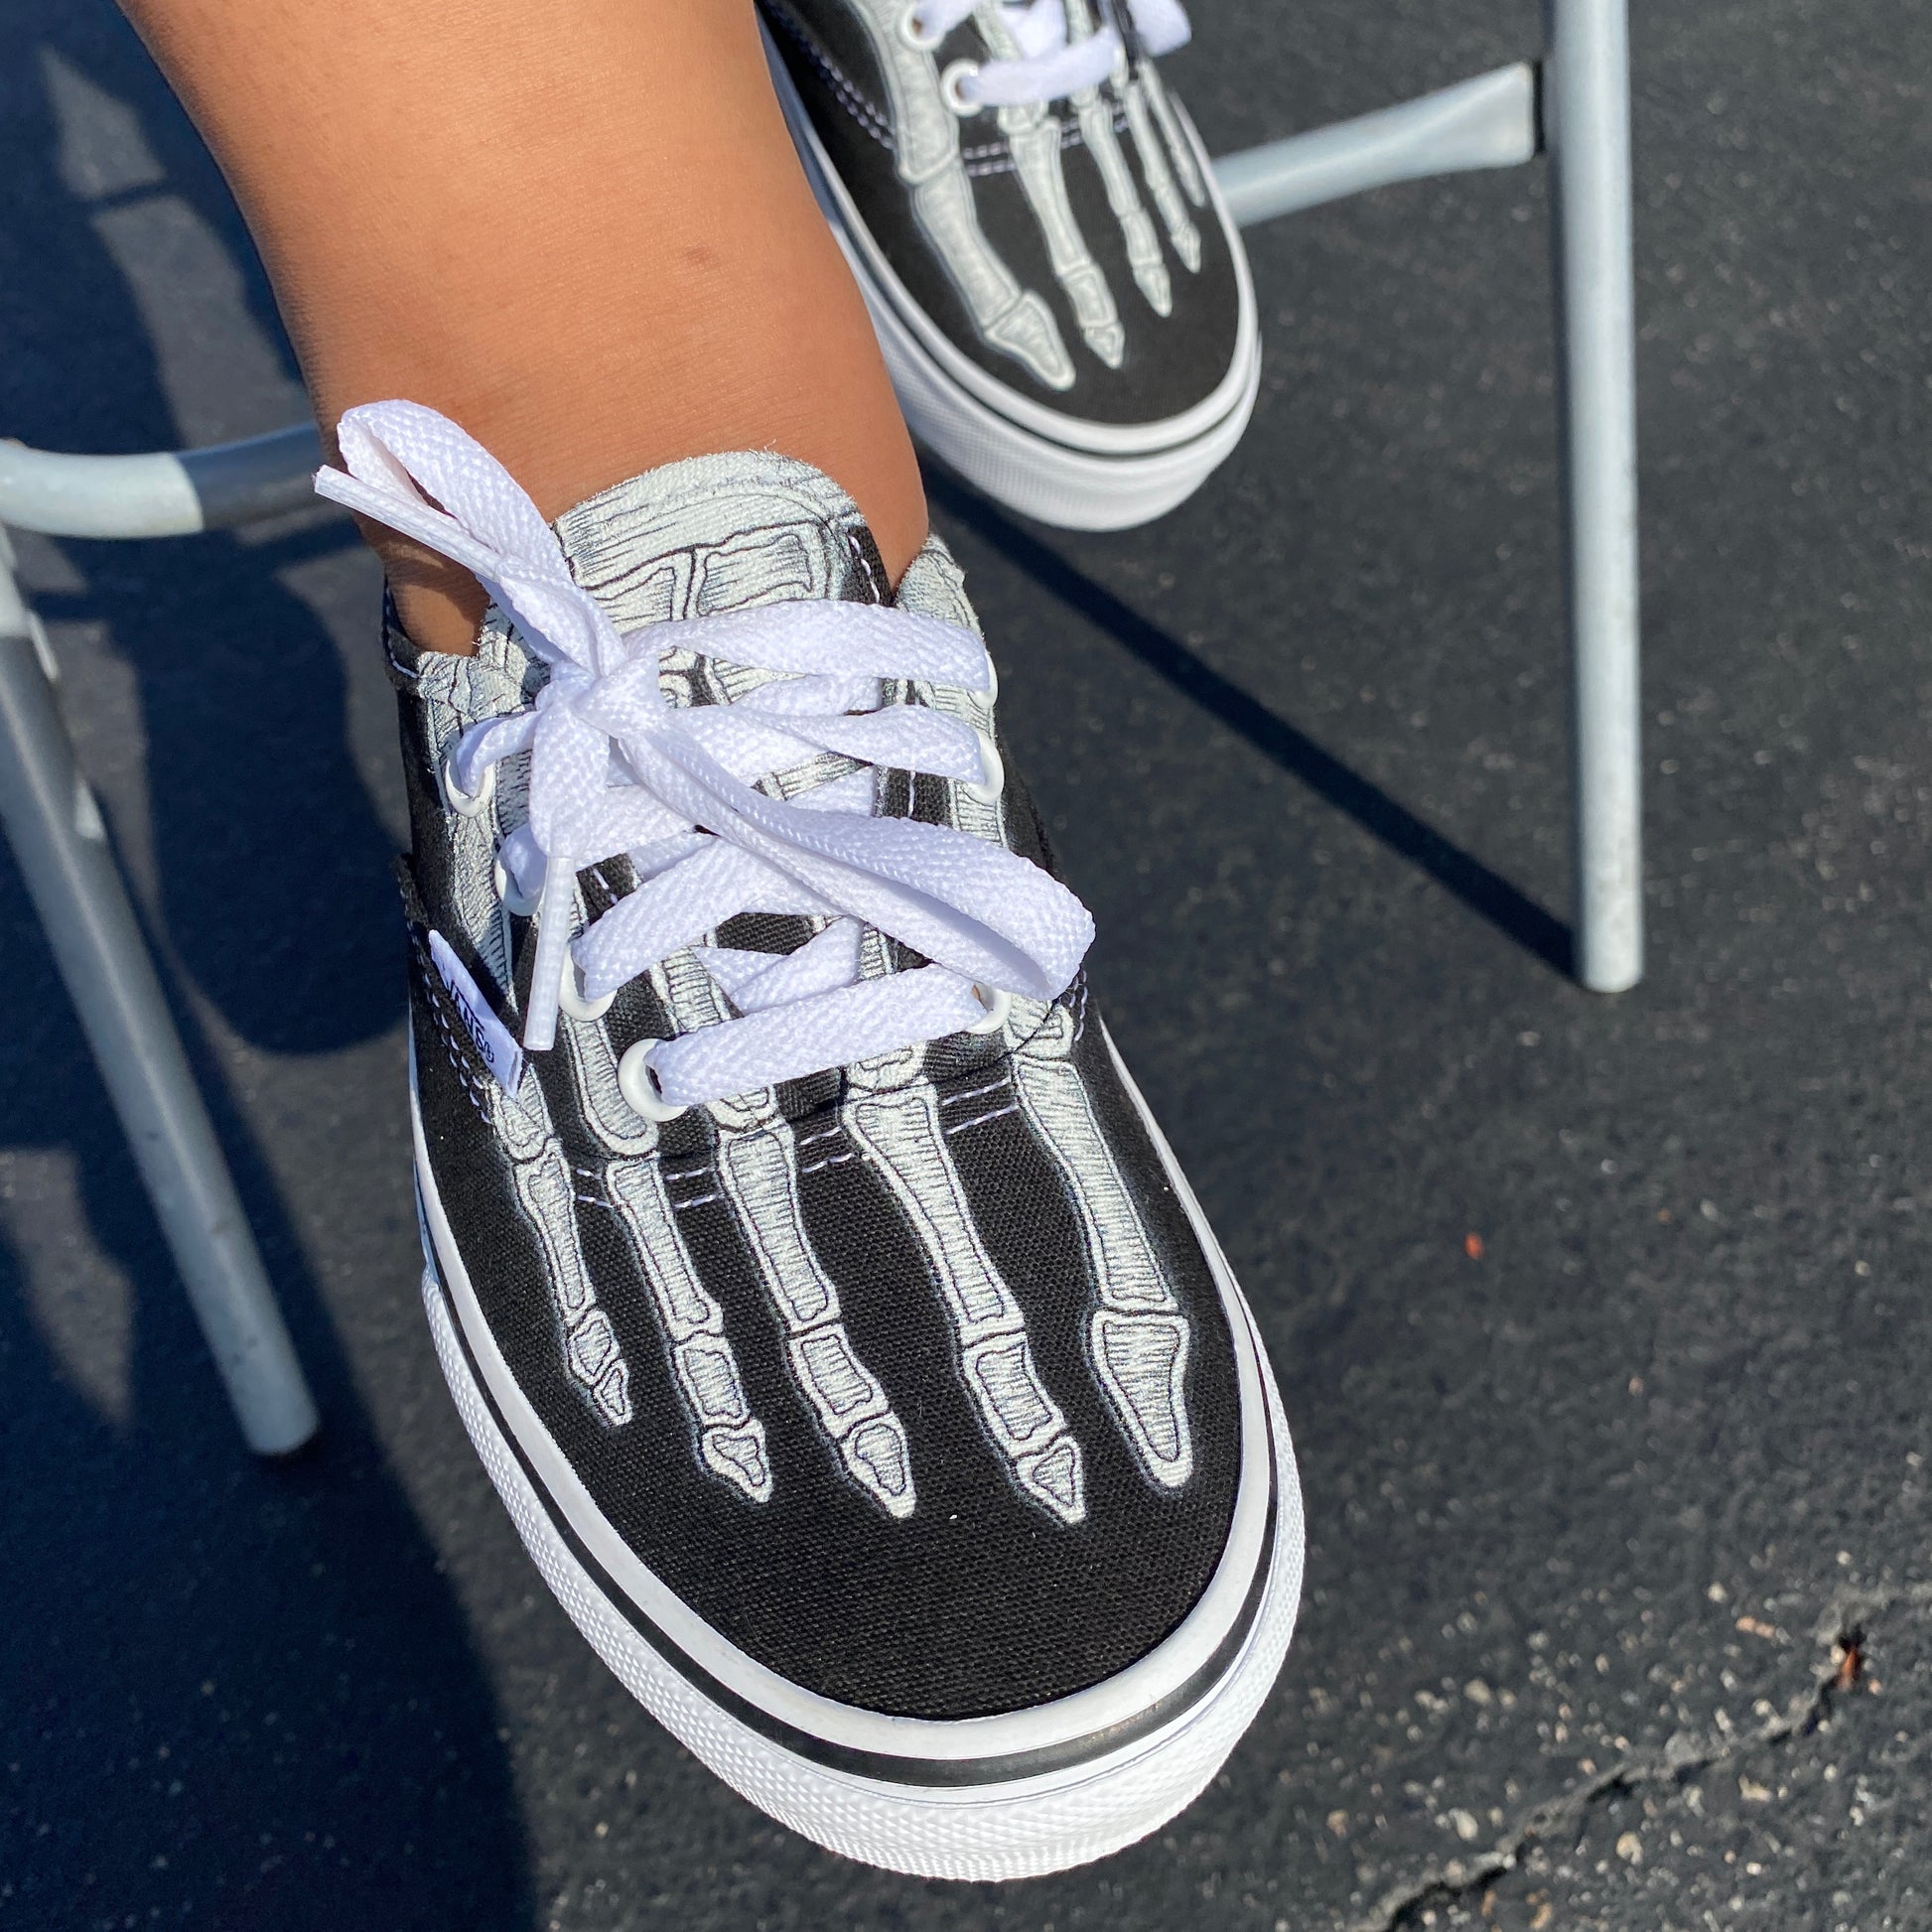 Skeleton Boney Feet Custom Vans Slip on Shoes 